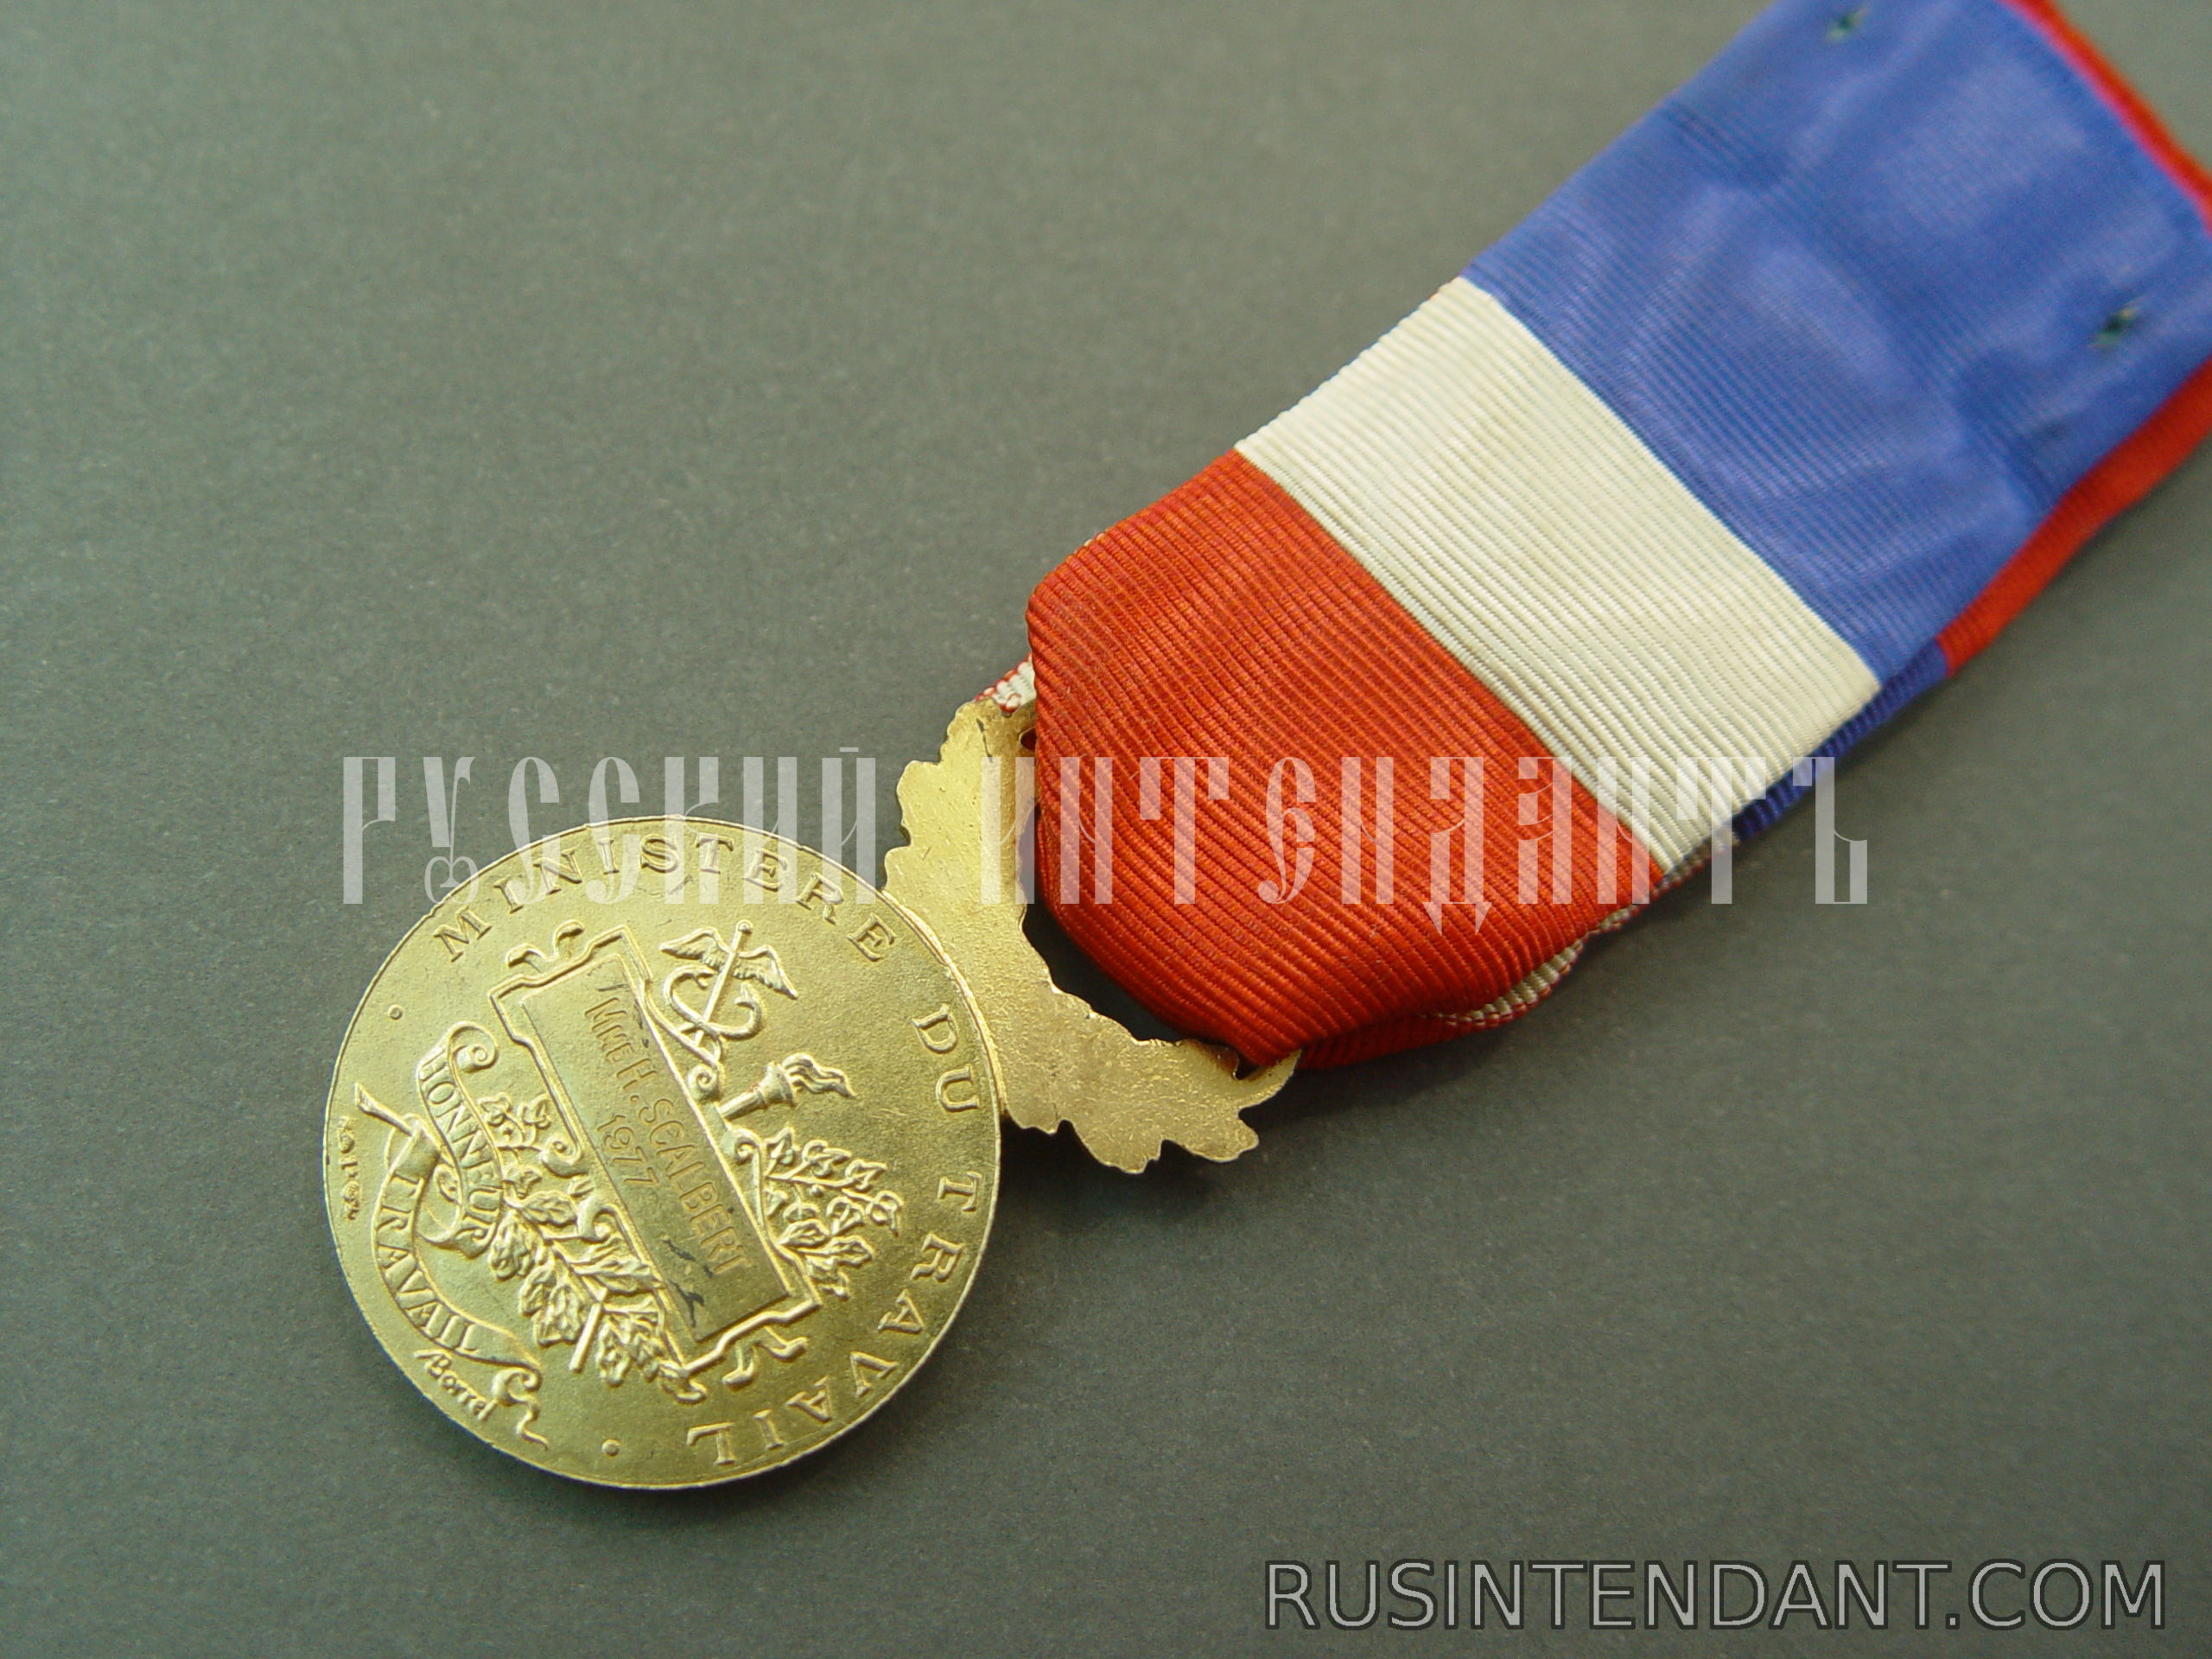 Фото 5: Почетная медаль Труда 